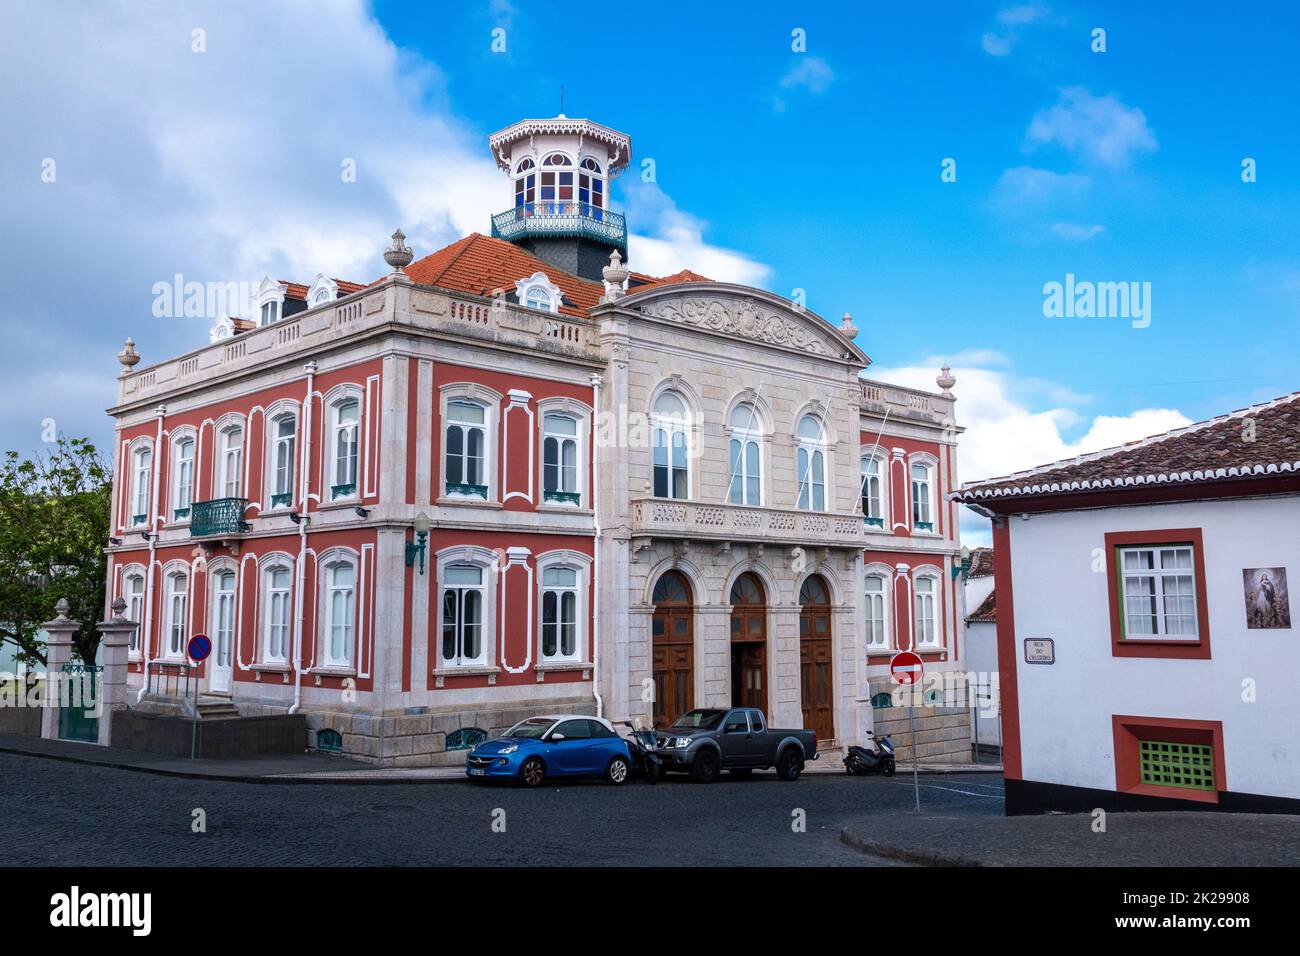 La résidence Silveira e Paulo, ou Palacete Silveira e Paulo sur Rua da Conceicao à Angra do Heroismo, île de Terceira, Açores, Portugal. Banque D'Images